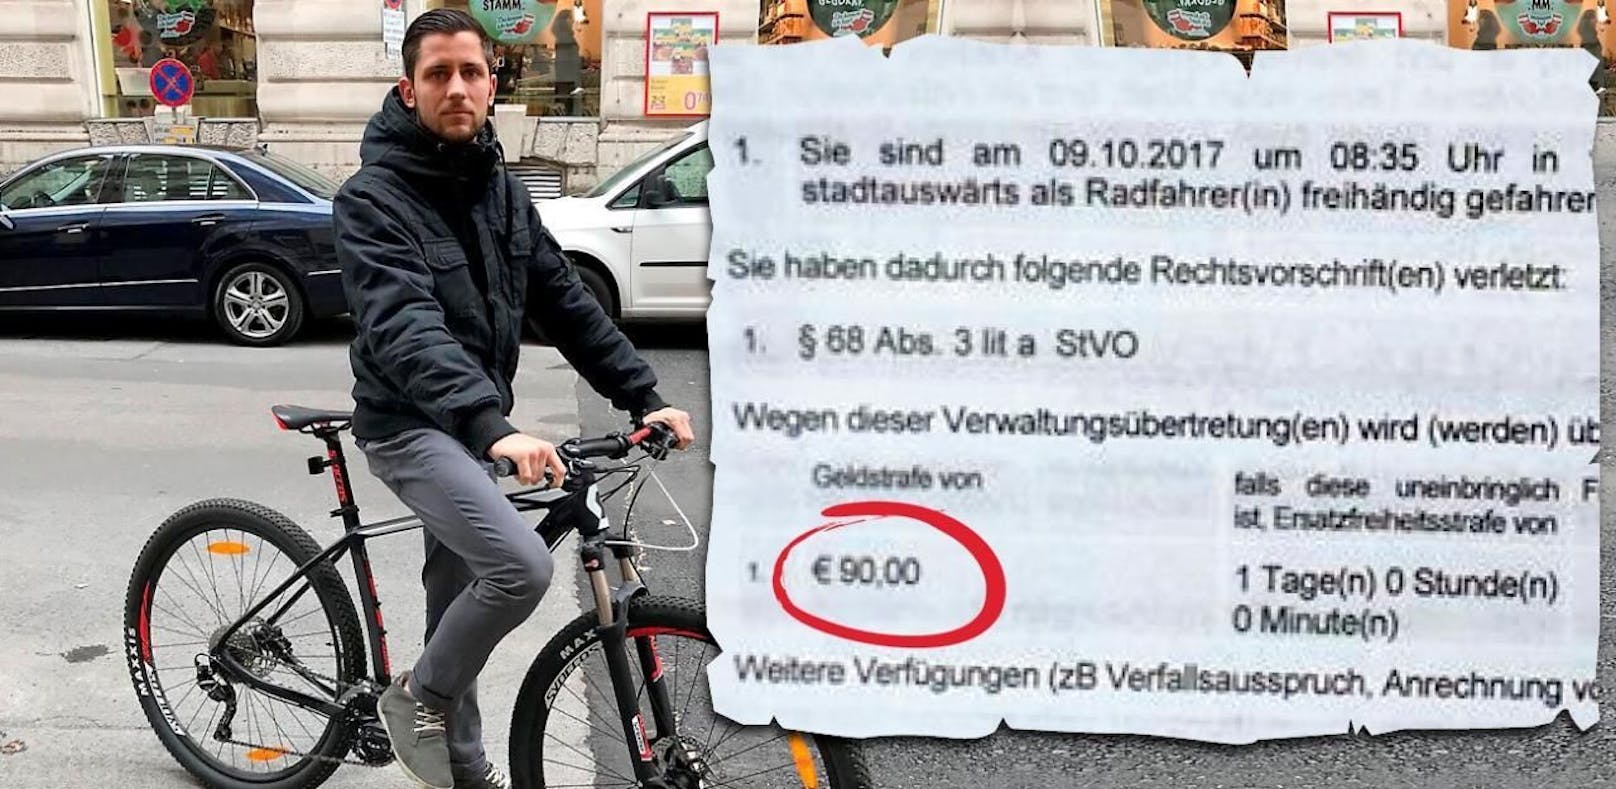 90 Euro (!) Strafe für freihändiges Radfahren